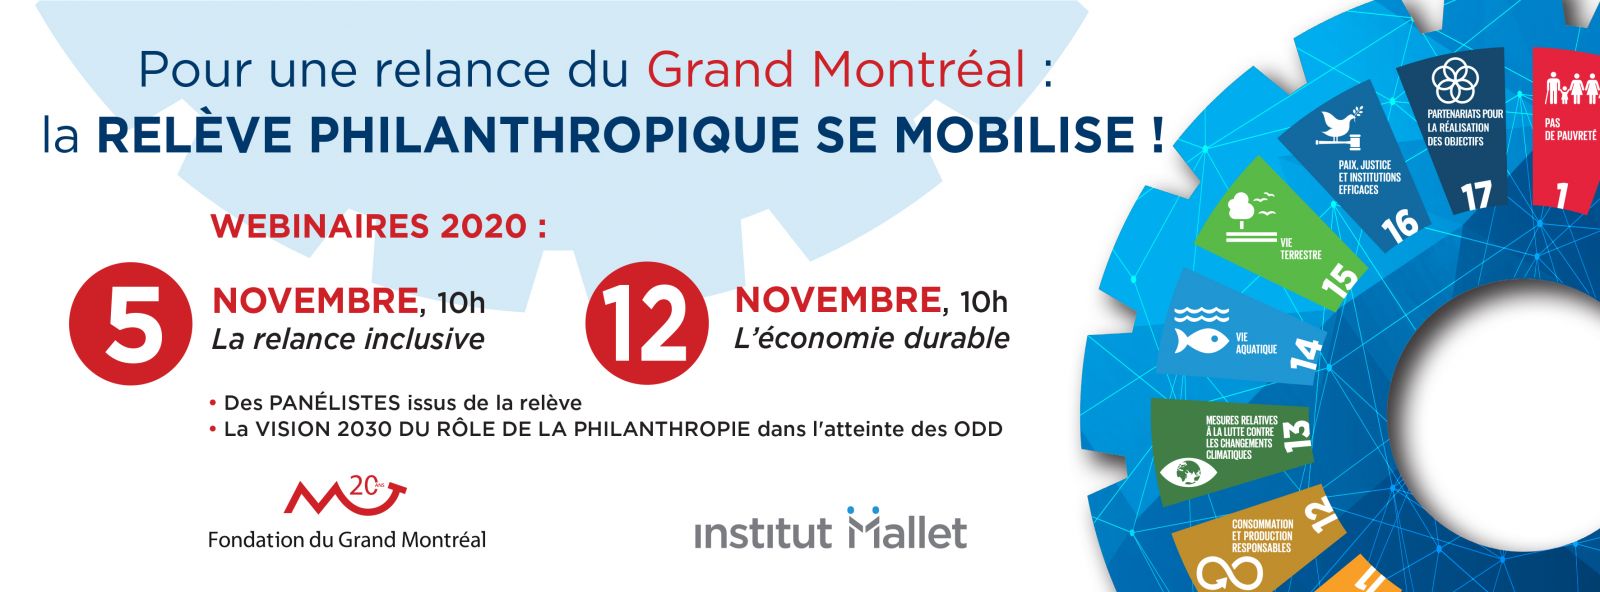 Visuel National Philanthropy Month 2020 - relance du Grand Montréal